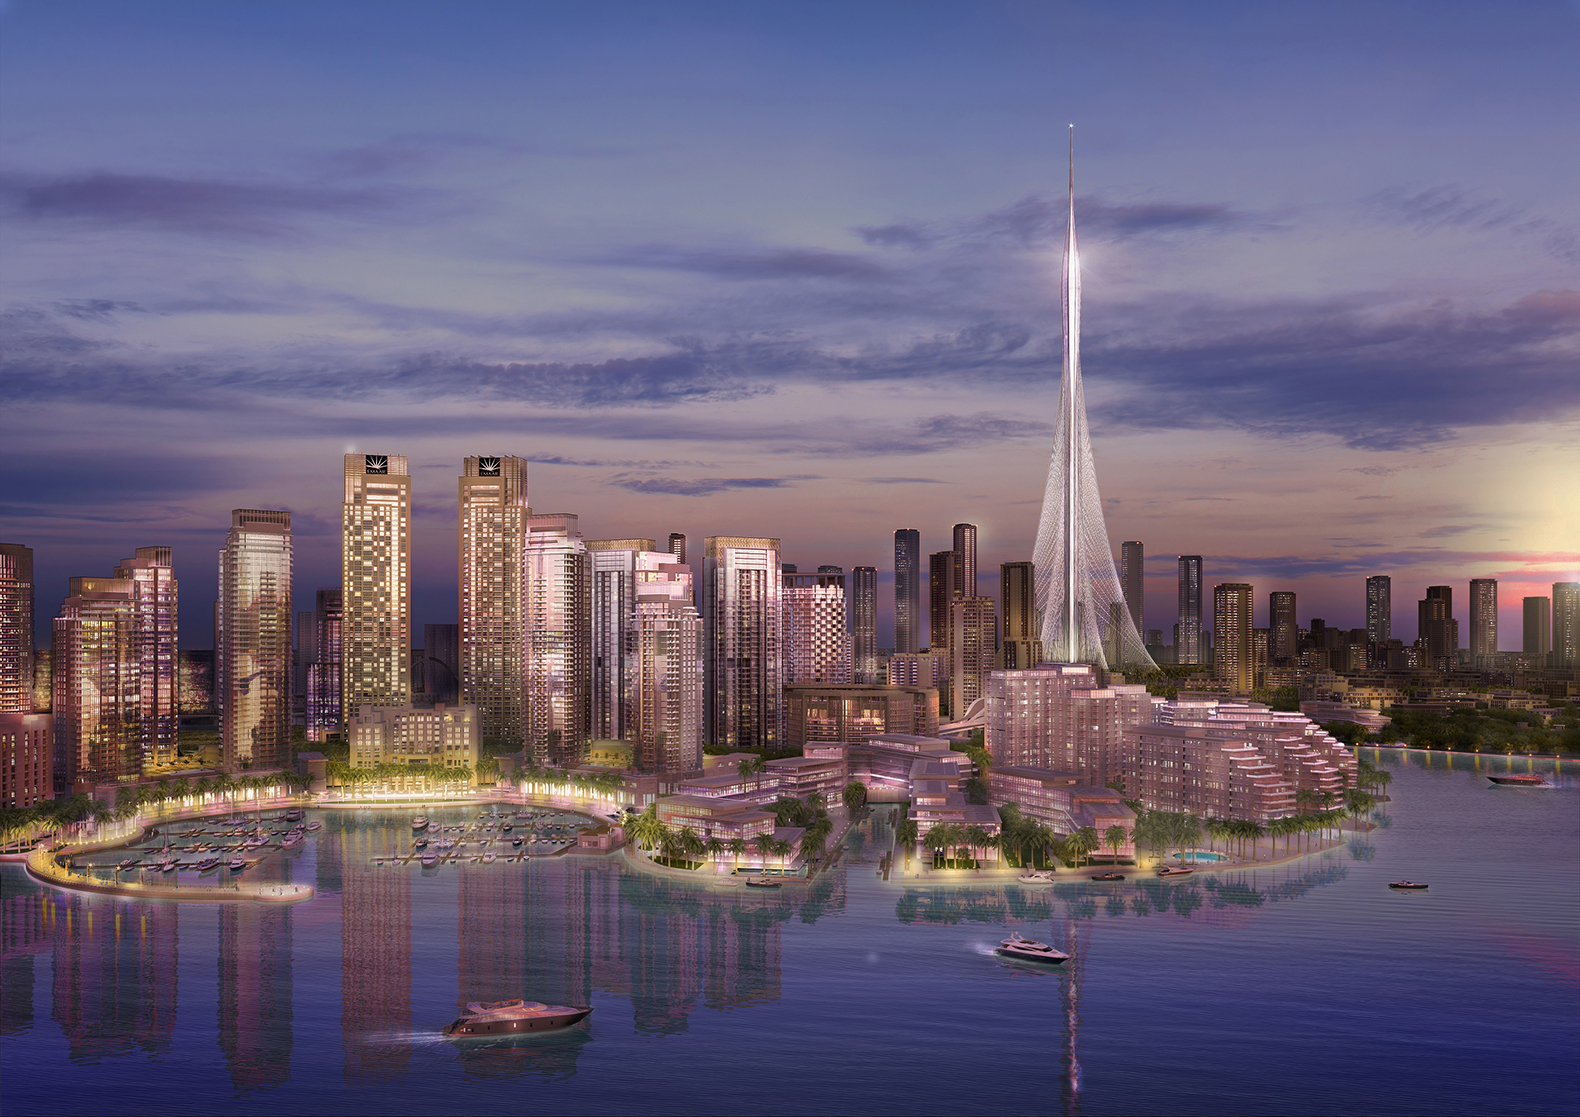 Najwyższy budynek powstanie... znowu w Dubaju? Santiago Calatrava mediarun dubai tower3